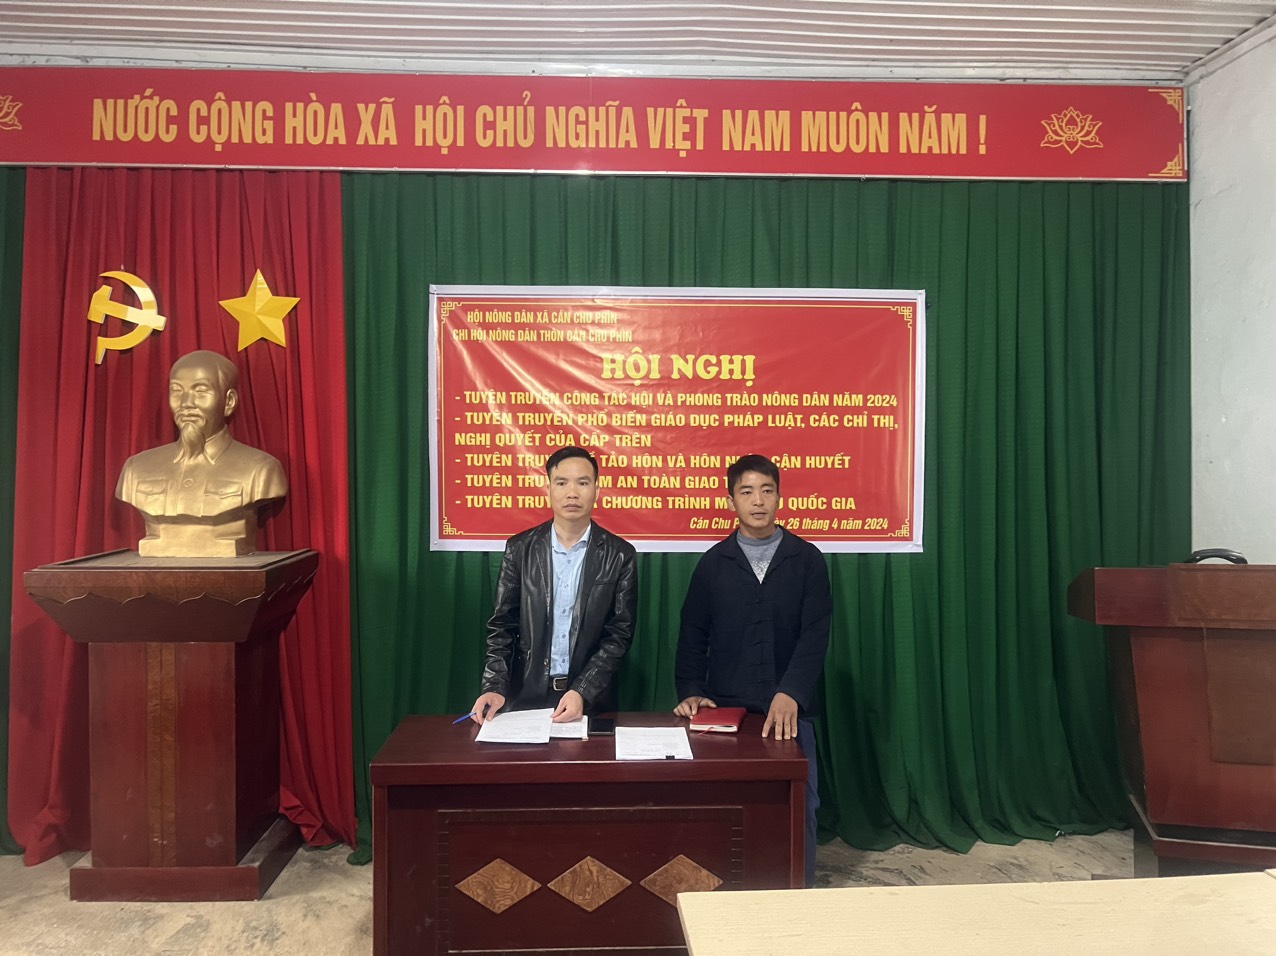 Hội nông dân xã Cán Chu Phìn  thổ chức hội nghị tuyên truyền